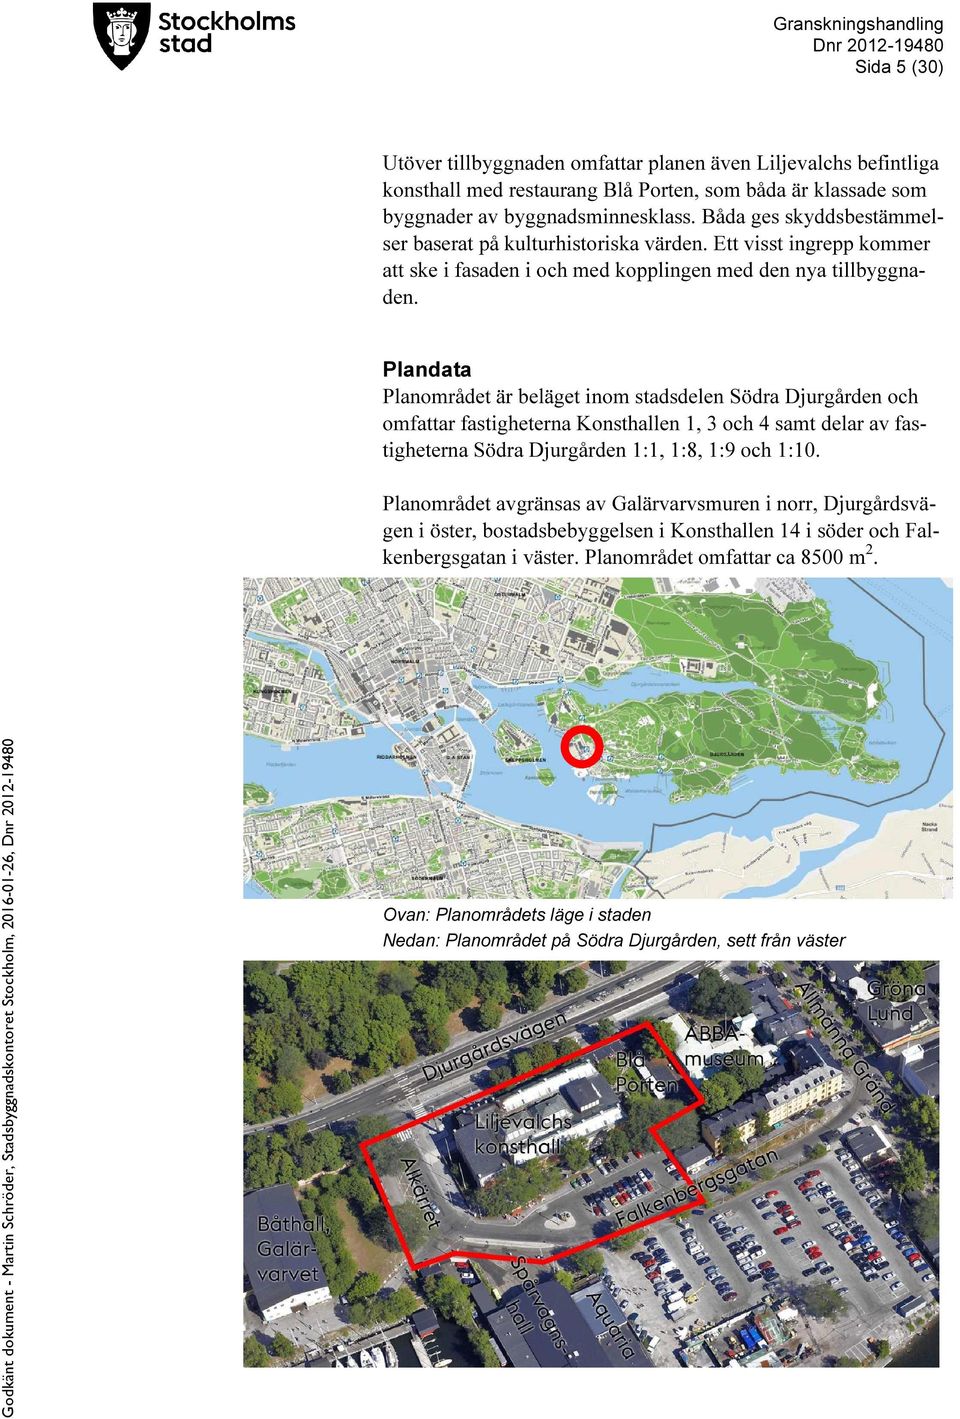 Plandata Planområdet är beläget inom stadsdelen Södra Djurgården och omfattar fastigheterna Konsthallen 1, 3 och 4 samt delar av fastigheterna Södra Djurgården 1:1, 1:8, 1:9 och 1:10.